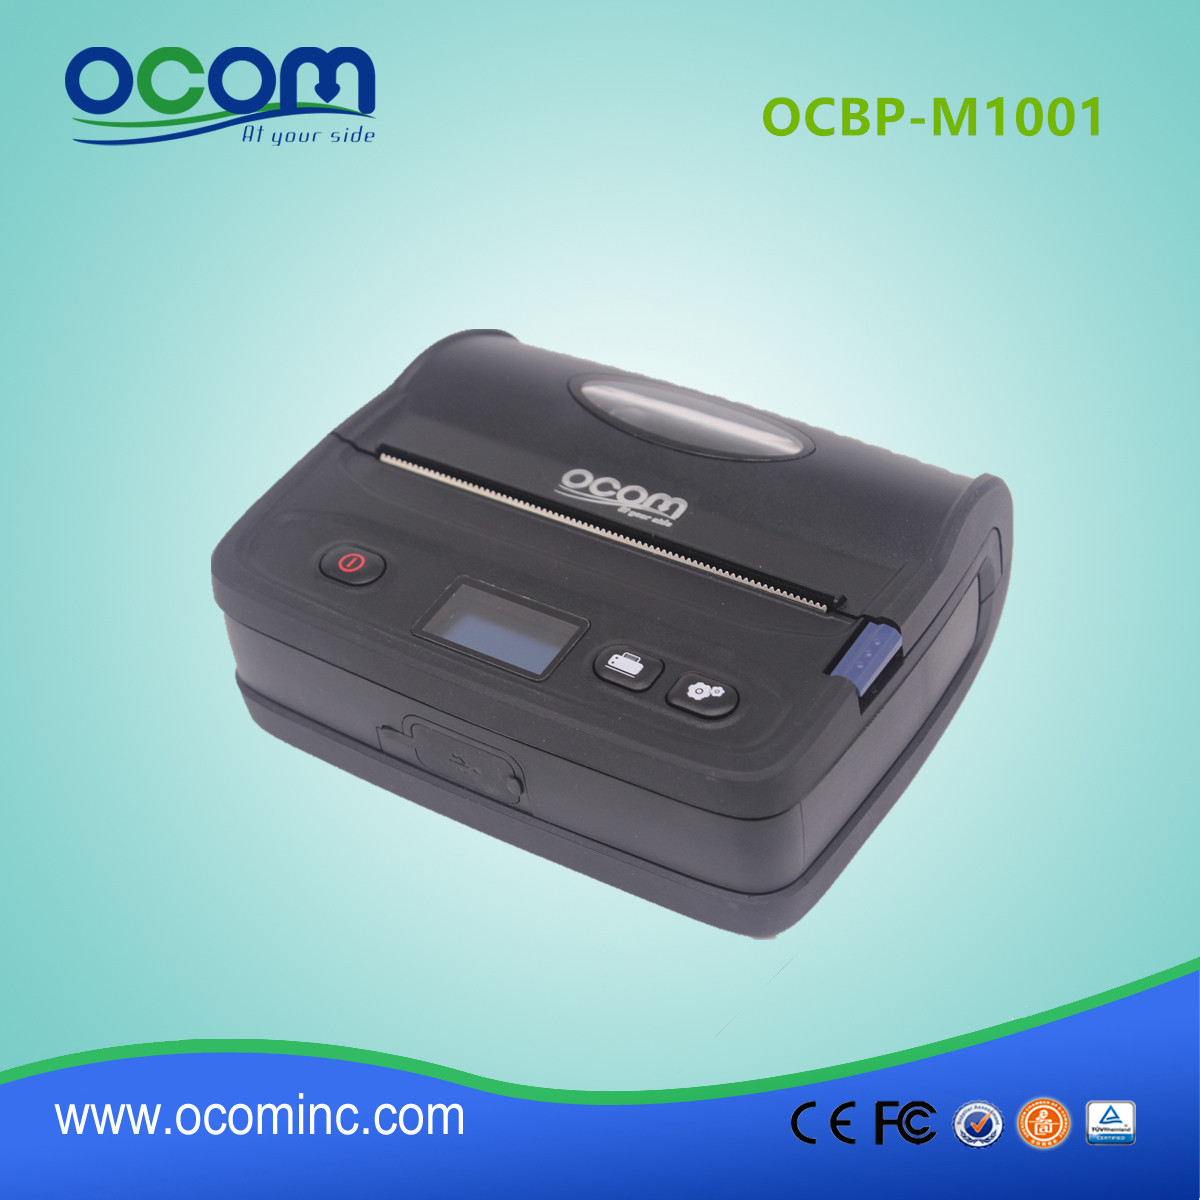 OCBP-M1001 Nero Mobile adesivo POS termica ricevuta Barcode Label stampante